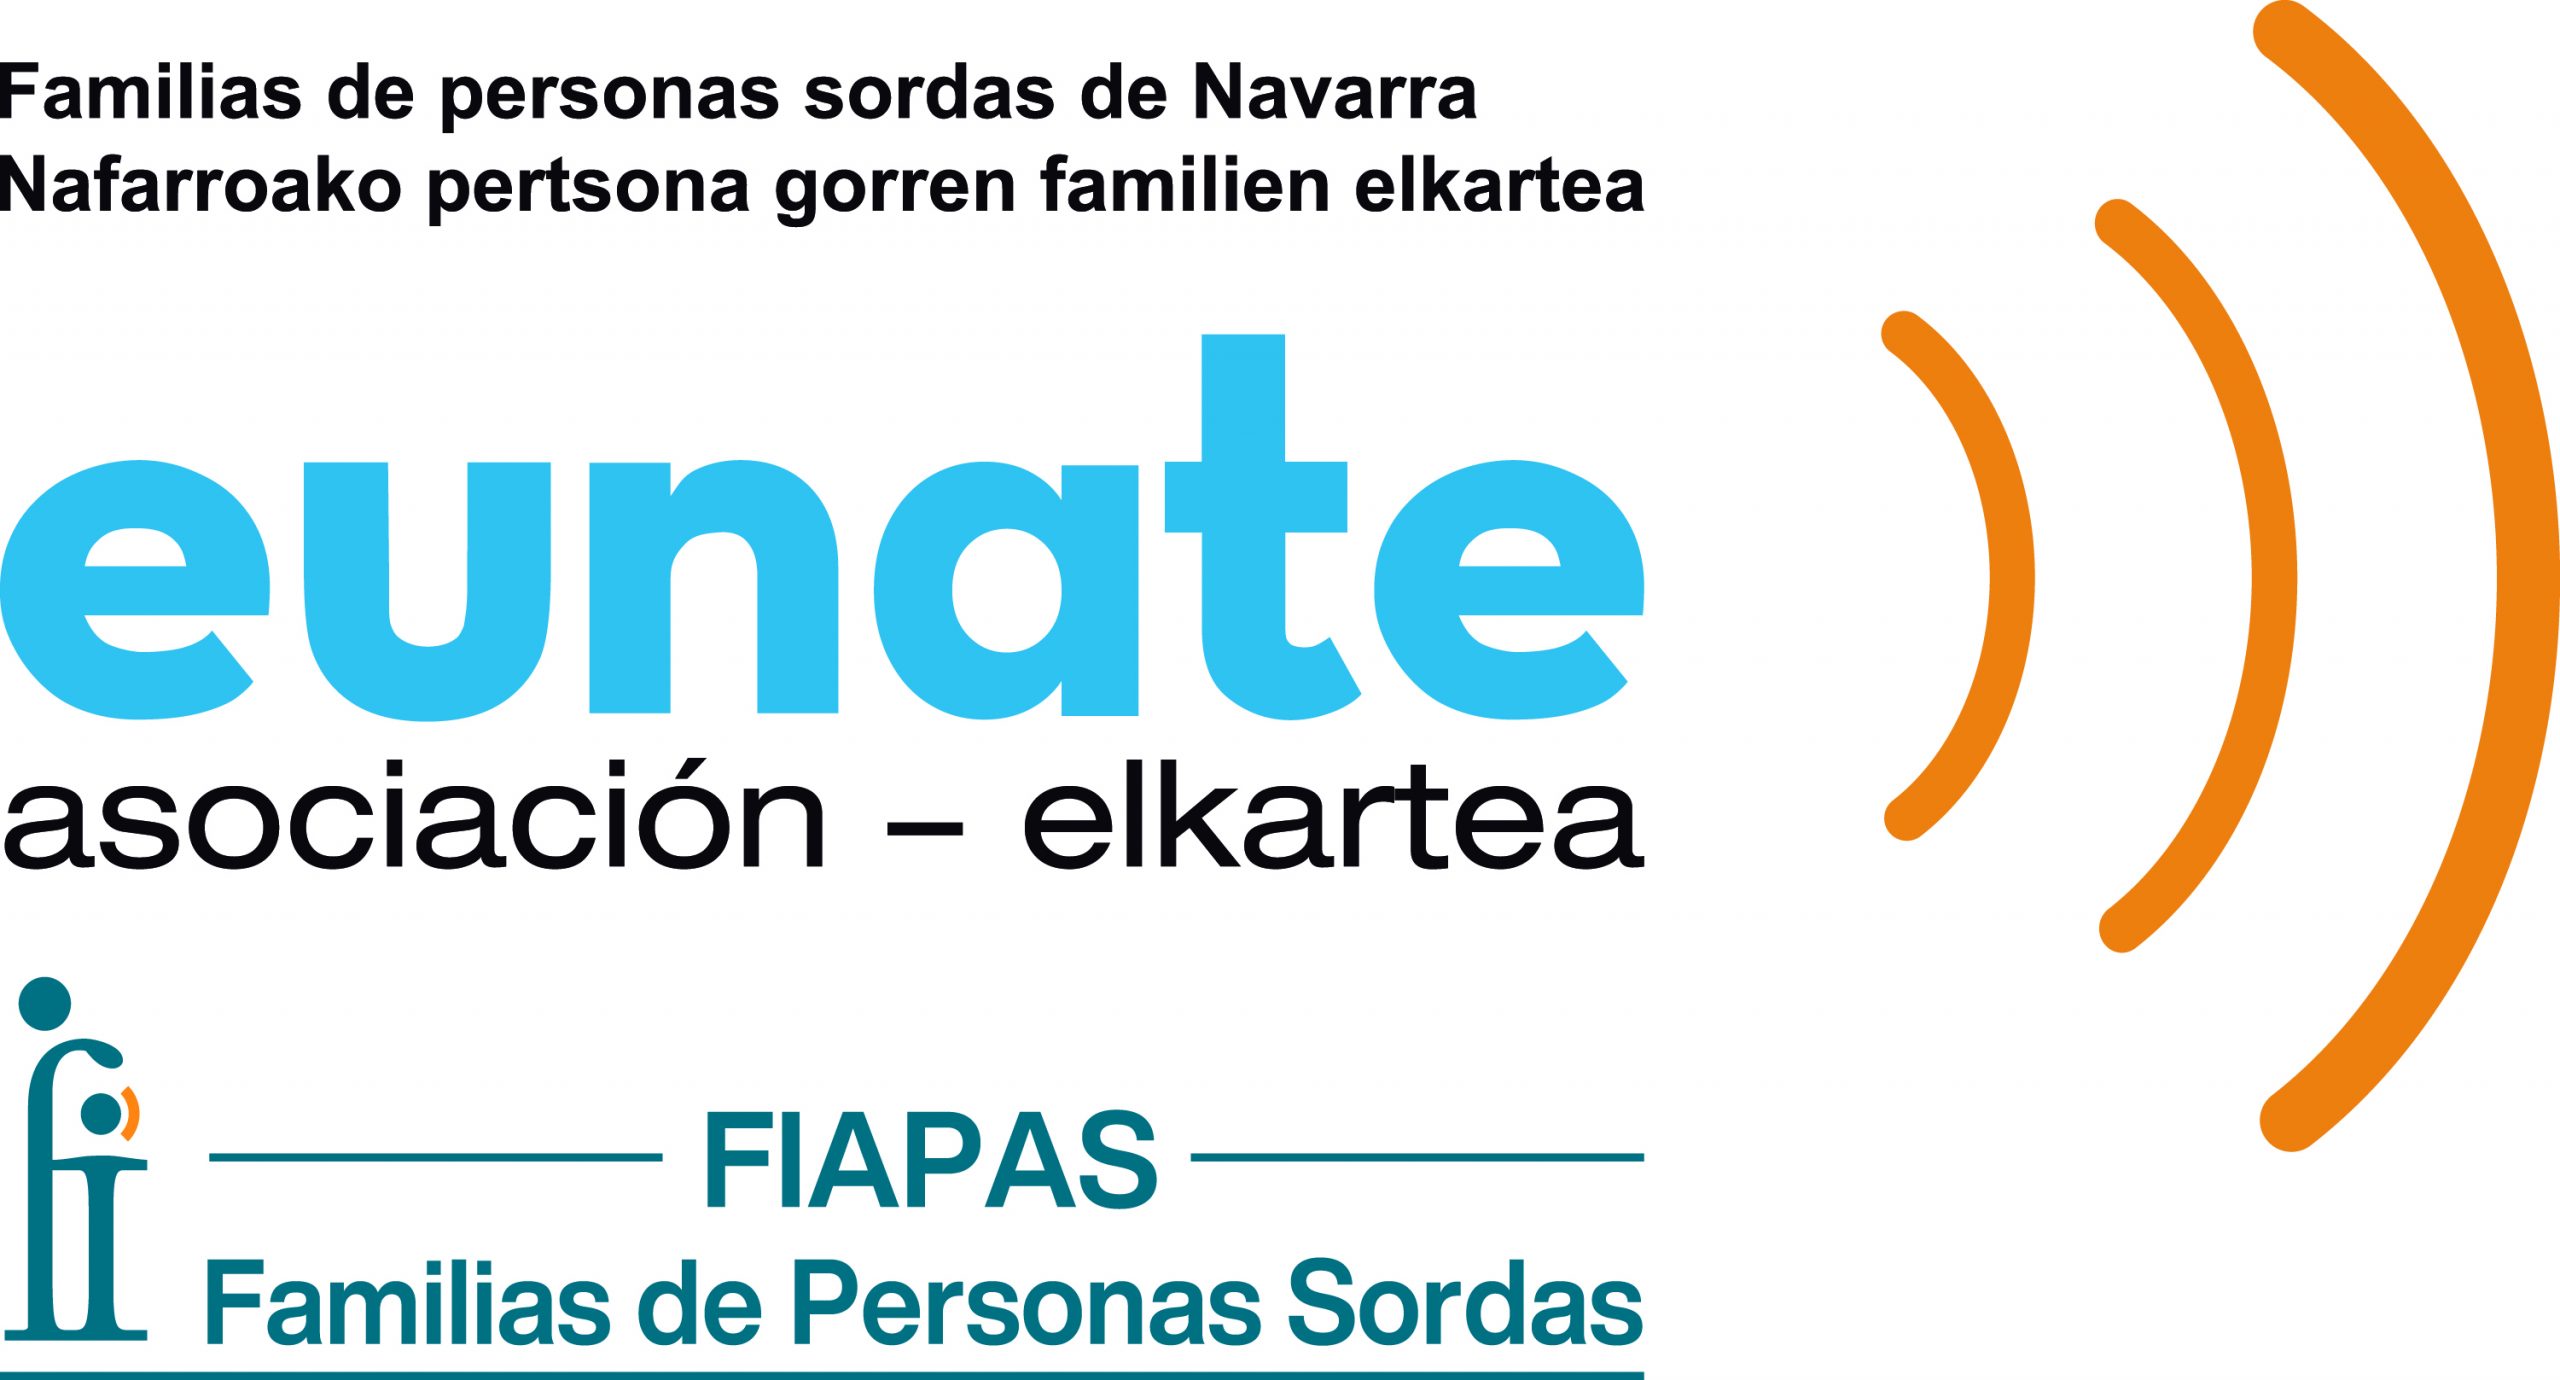 Logotipo de la asociación Eunate, que tiene tres ondas naranjas y el texto Familias de personas sordas de Navarra. También tiene debajo el logo de Fiapas, Familias de Personas Sordas.